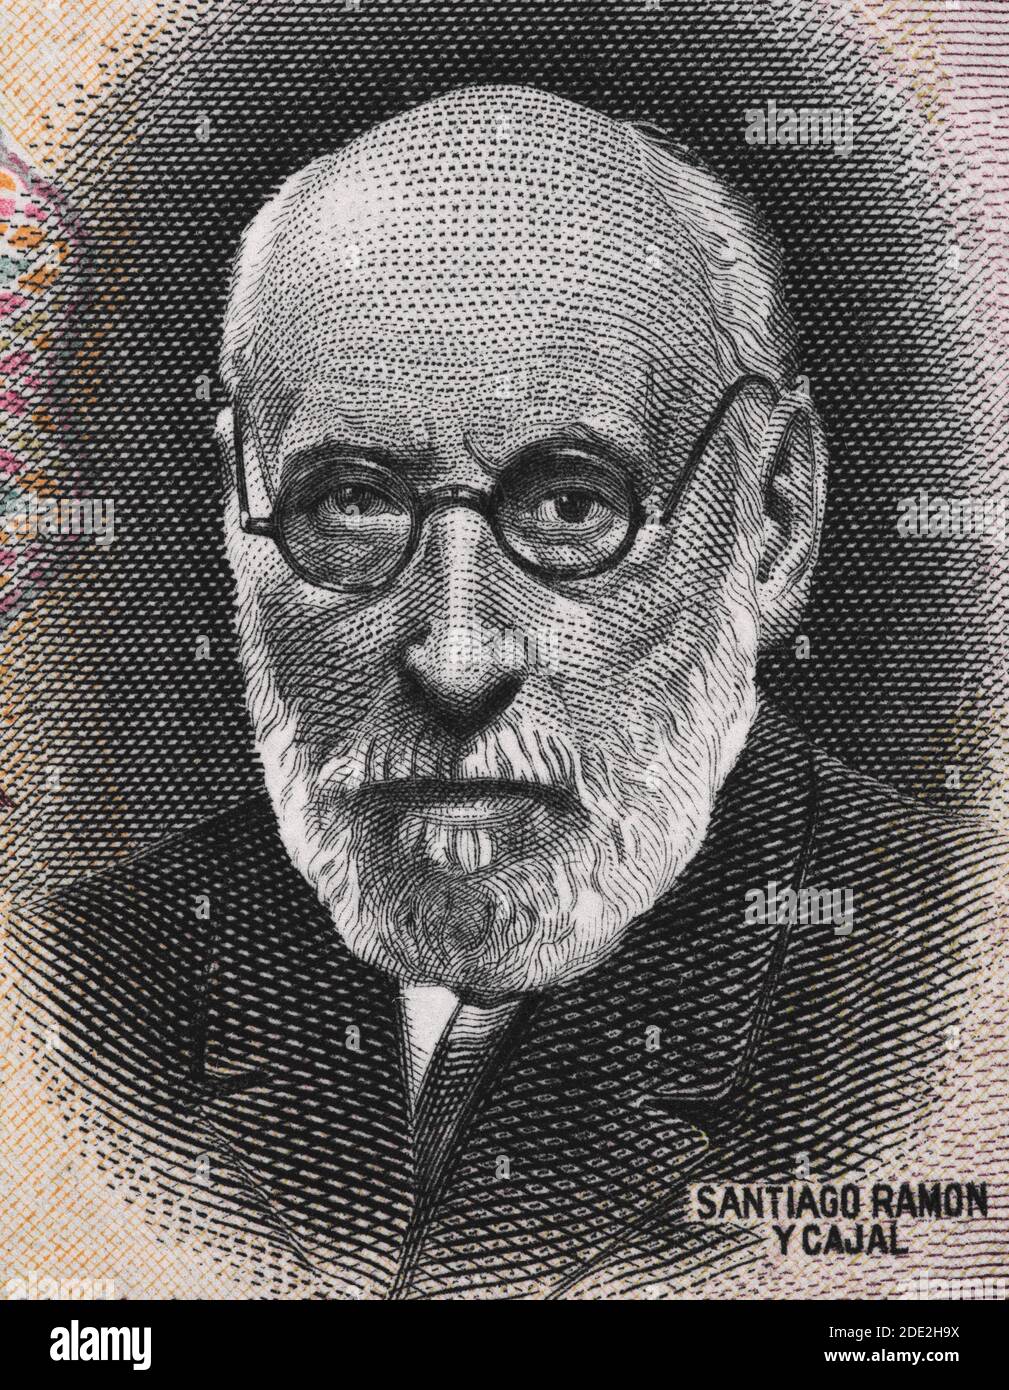 Santiago Ramon y Cajal portrait sur l'Espagne 50 pesetas banknote (1935) closeup, pathologiste espagnol, pionnier de la neuroscience moderne, lauréat du prix Nobel. Banque D'Images